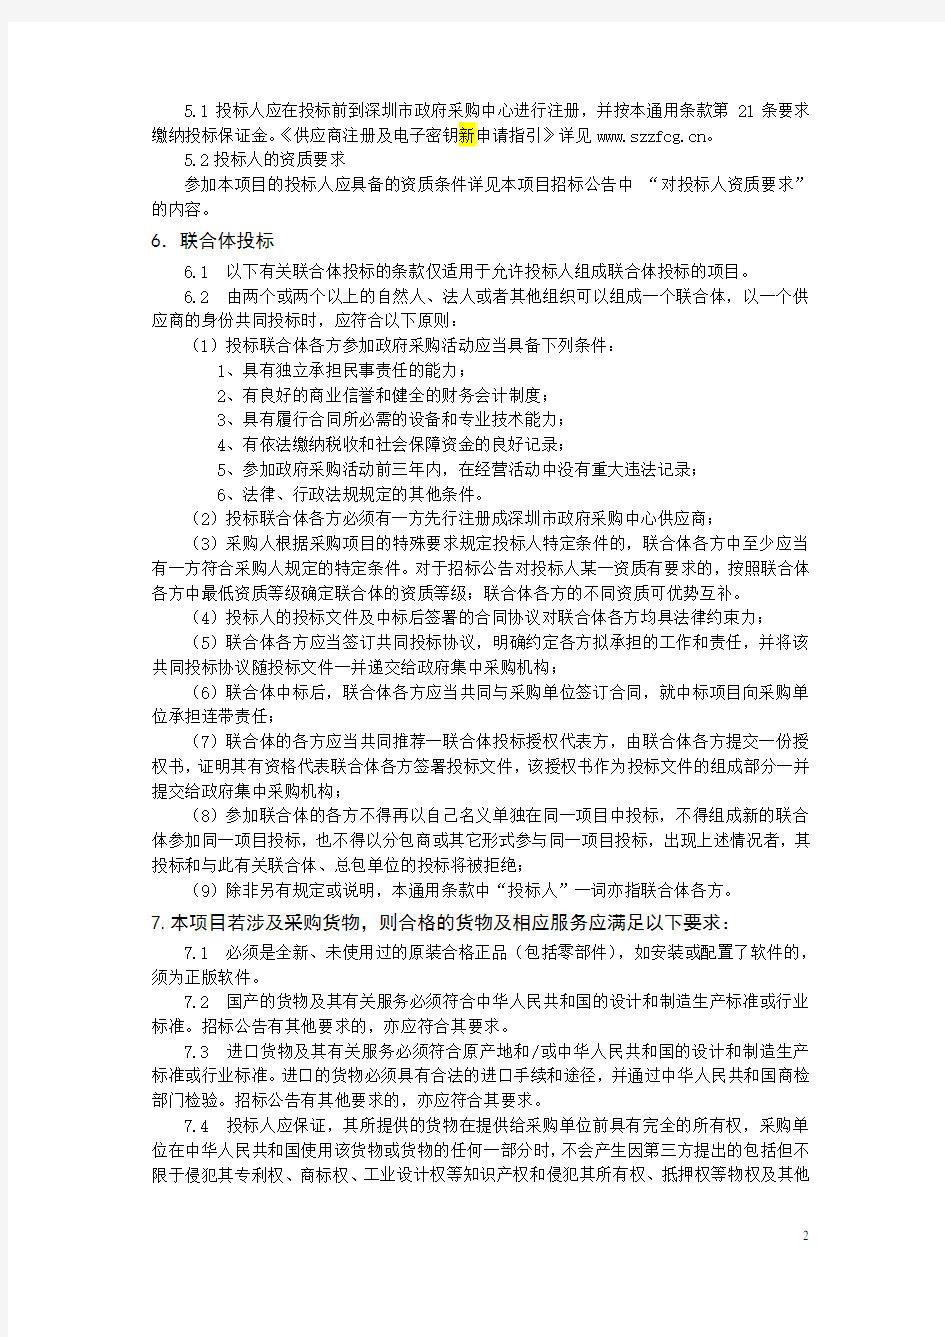 第二册 通用条款(公开招标) - 深圳政府在线